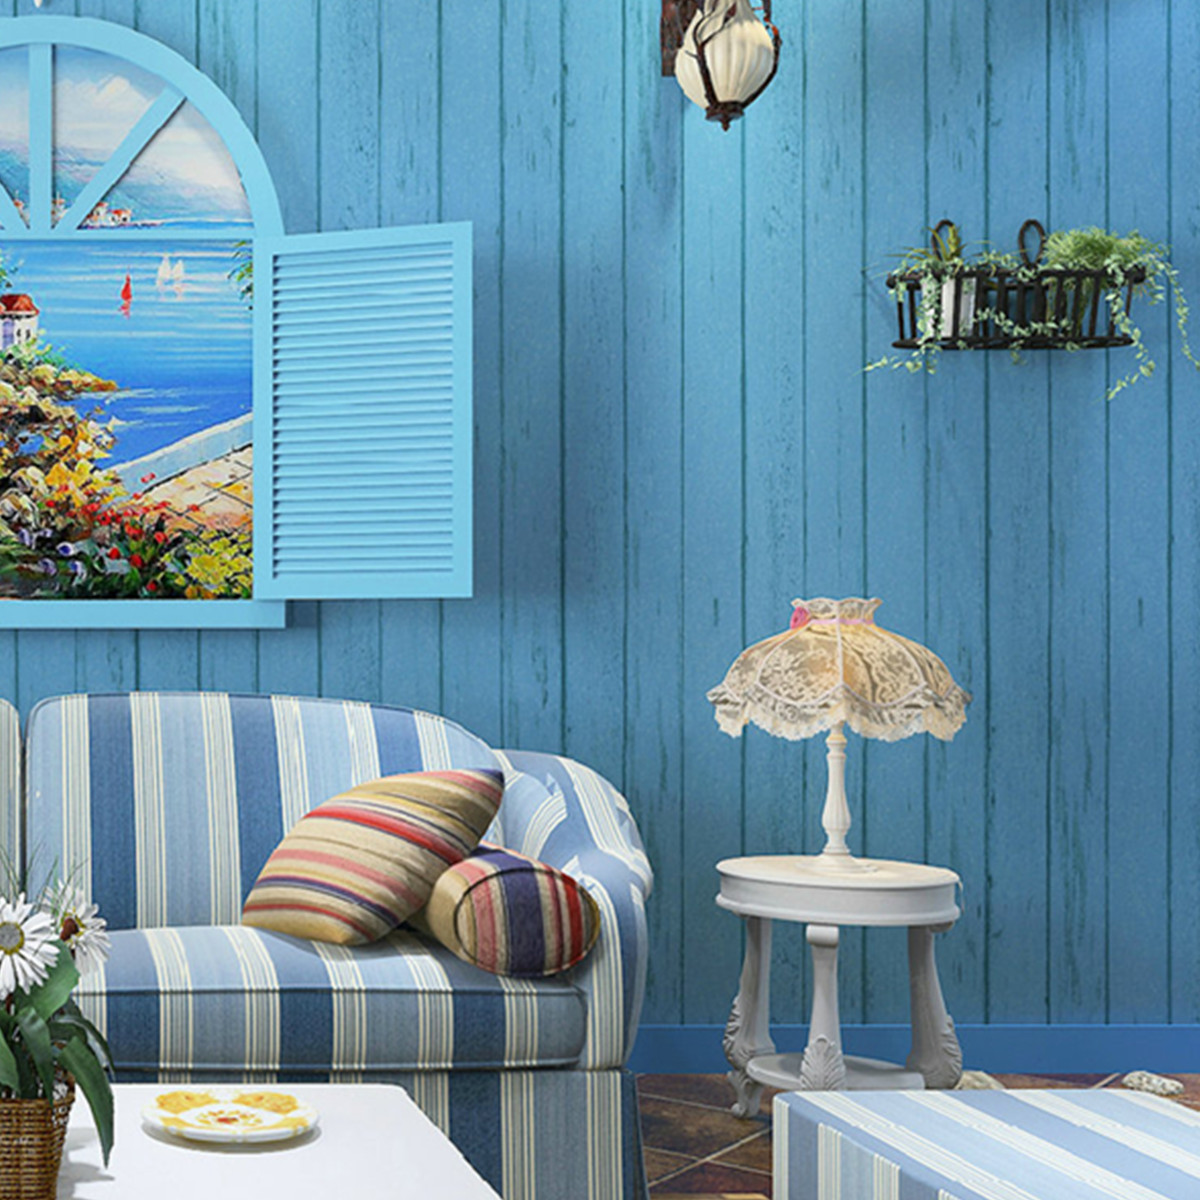 Mediterranean Style Non Woven Fabric Wallpaper Roll Diy Home Decor